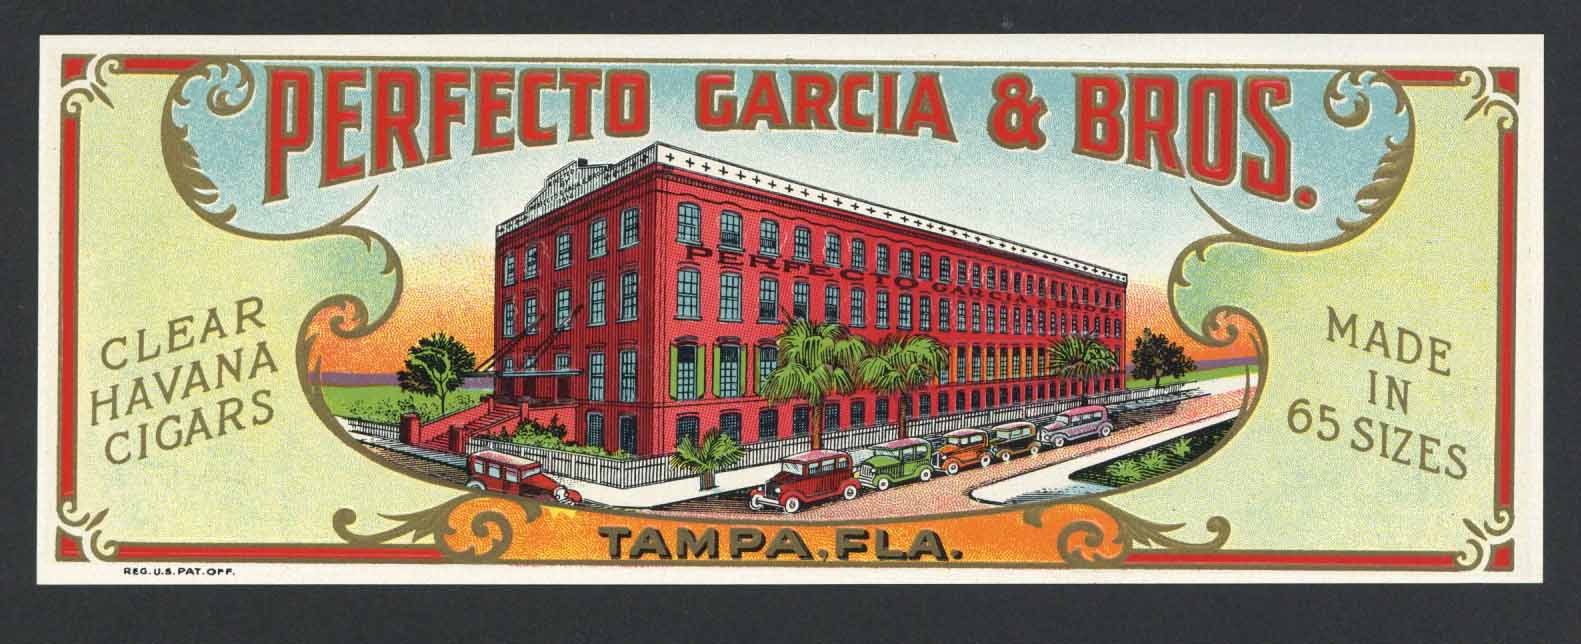 Perfecto Garcia & Bros. Brand Outer Cigar Label